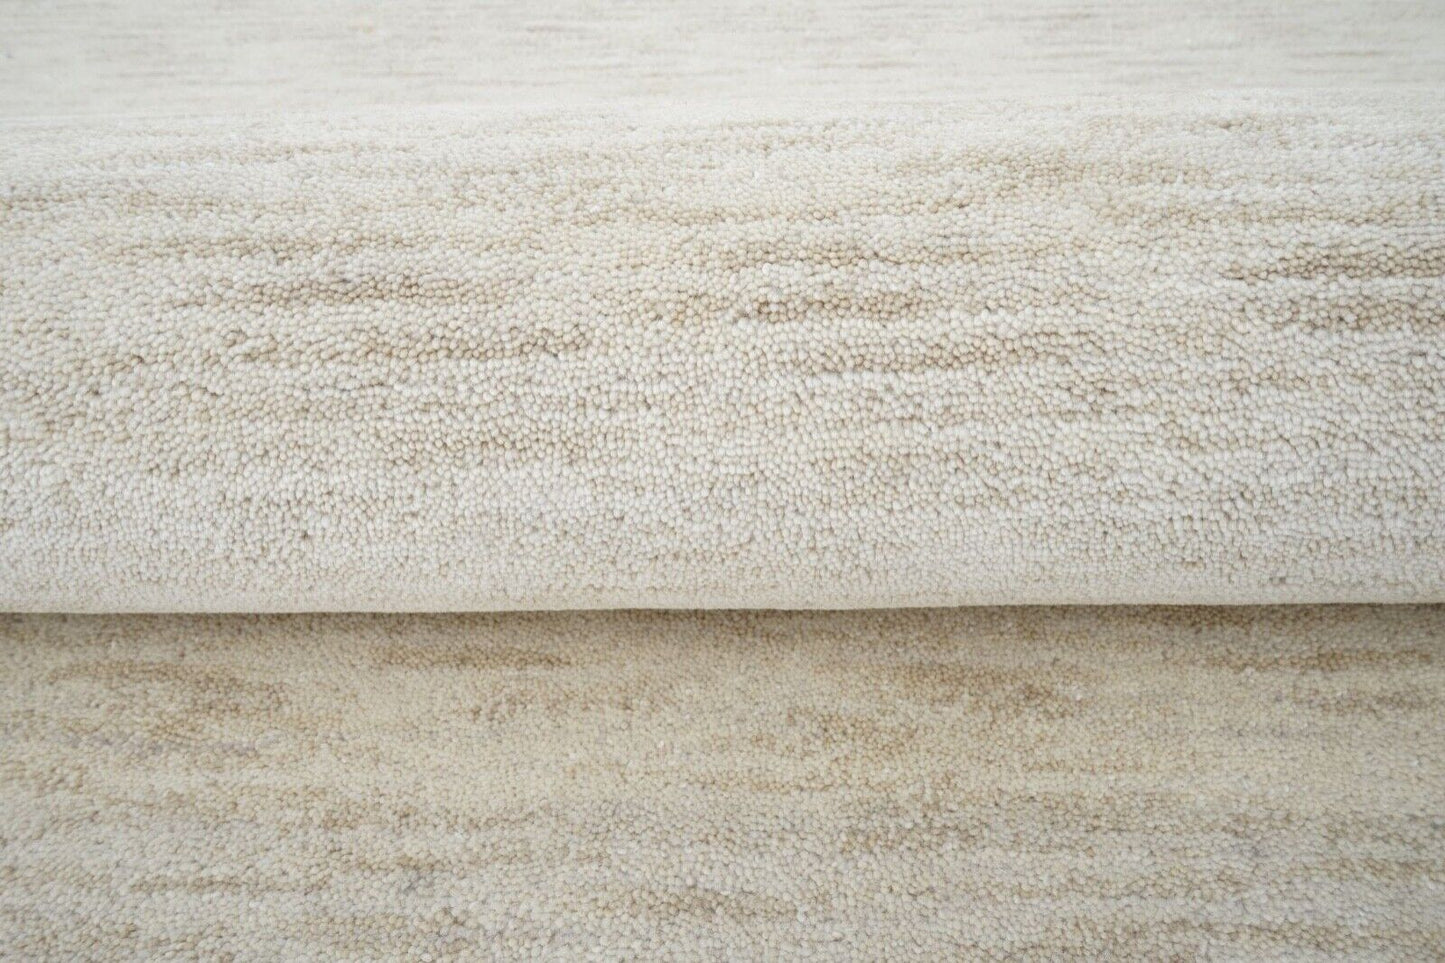 Gabbeh Teppich Beige elfenbeinfarbe 160X230 cm 100% Wolle Handgetuftet HT282